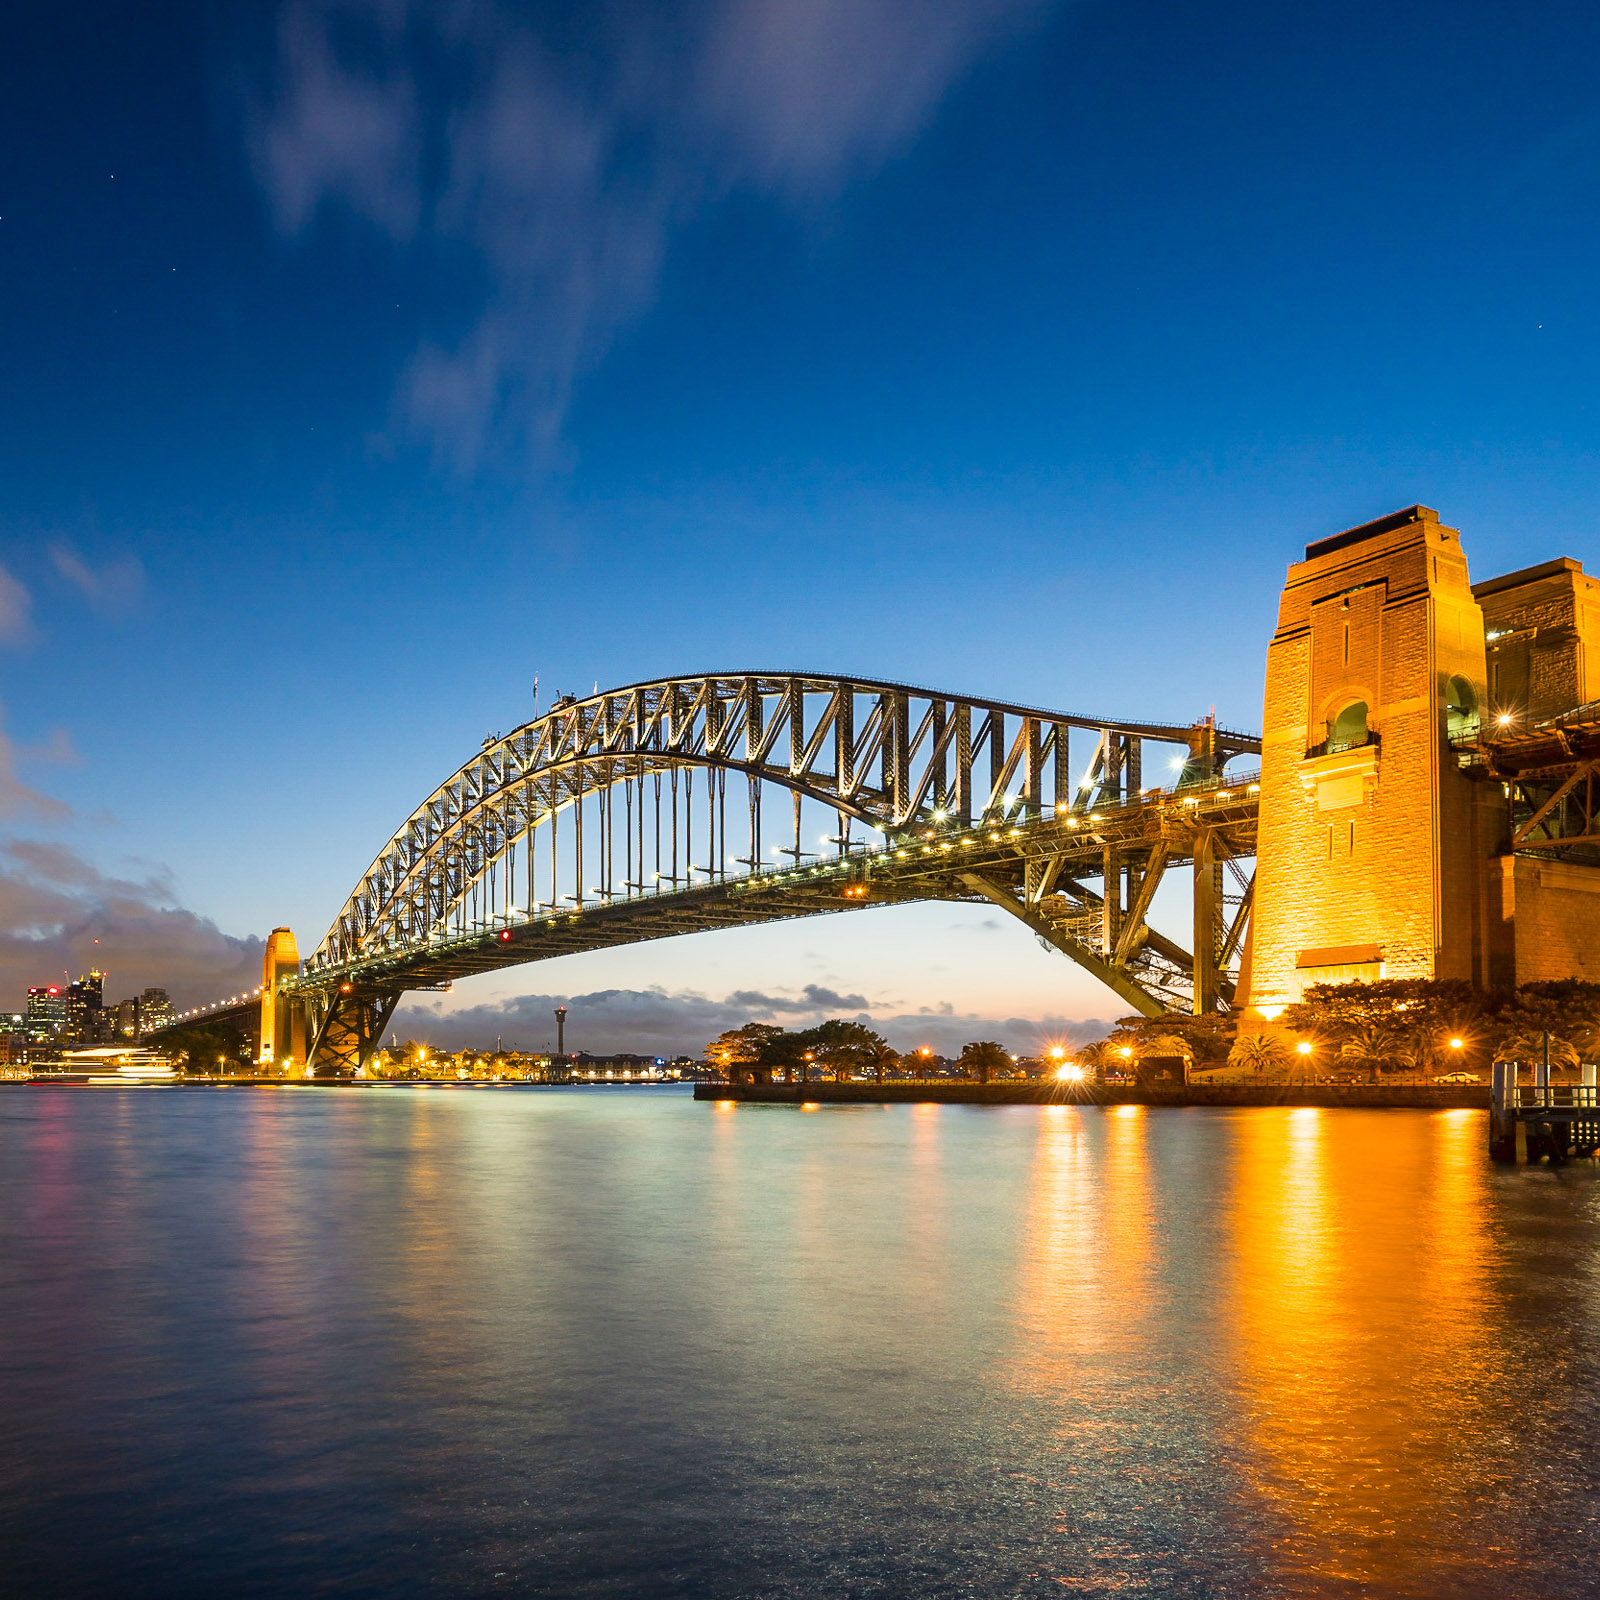 Мост Харбор бридж. Харбор-бридж. Оперный театр в Сиднее. Мост в Австралии.